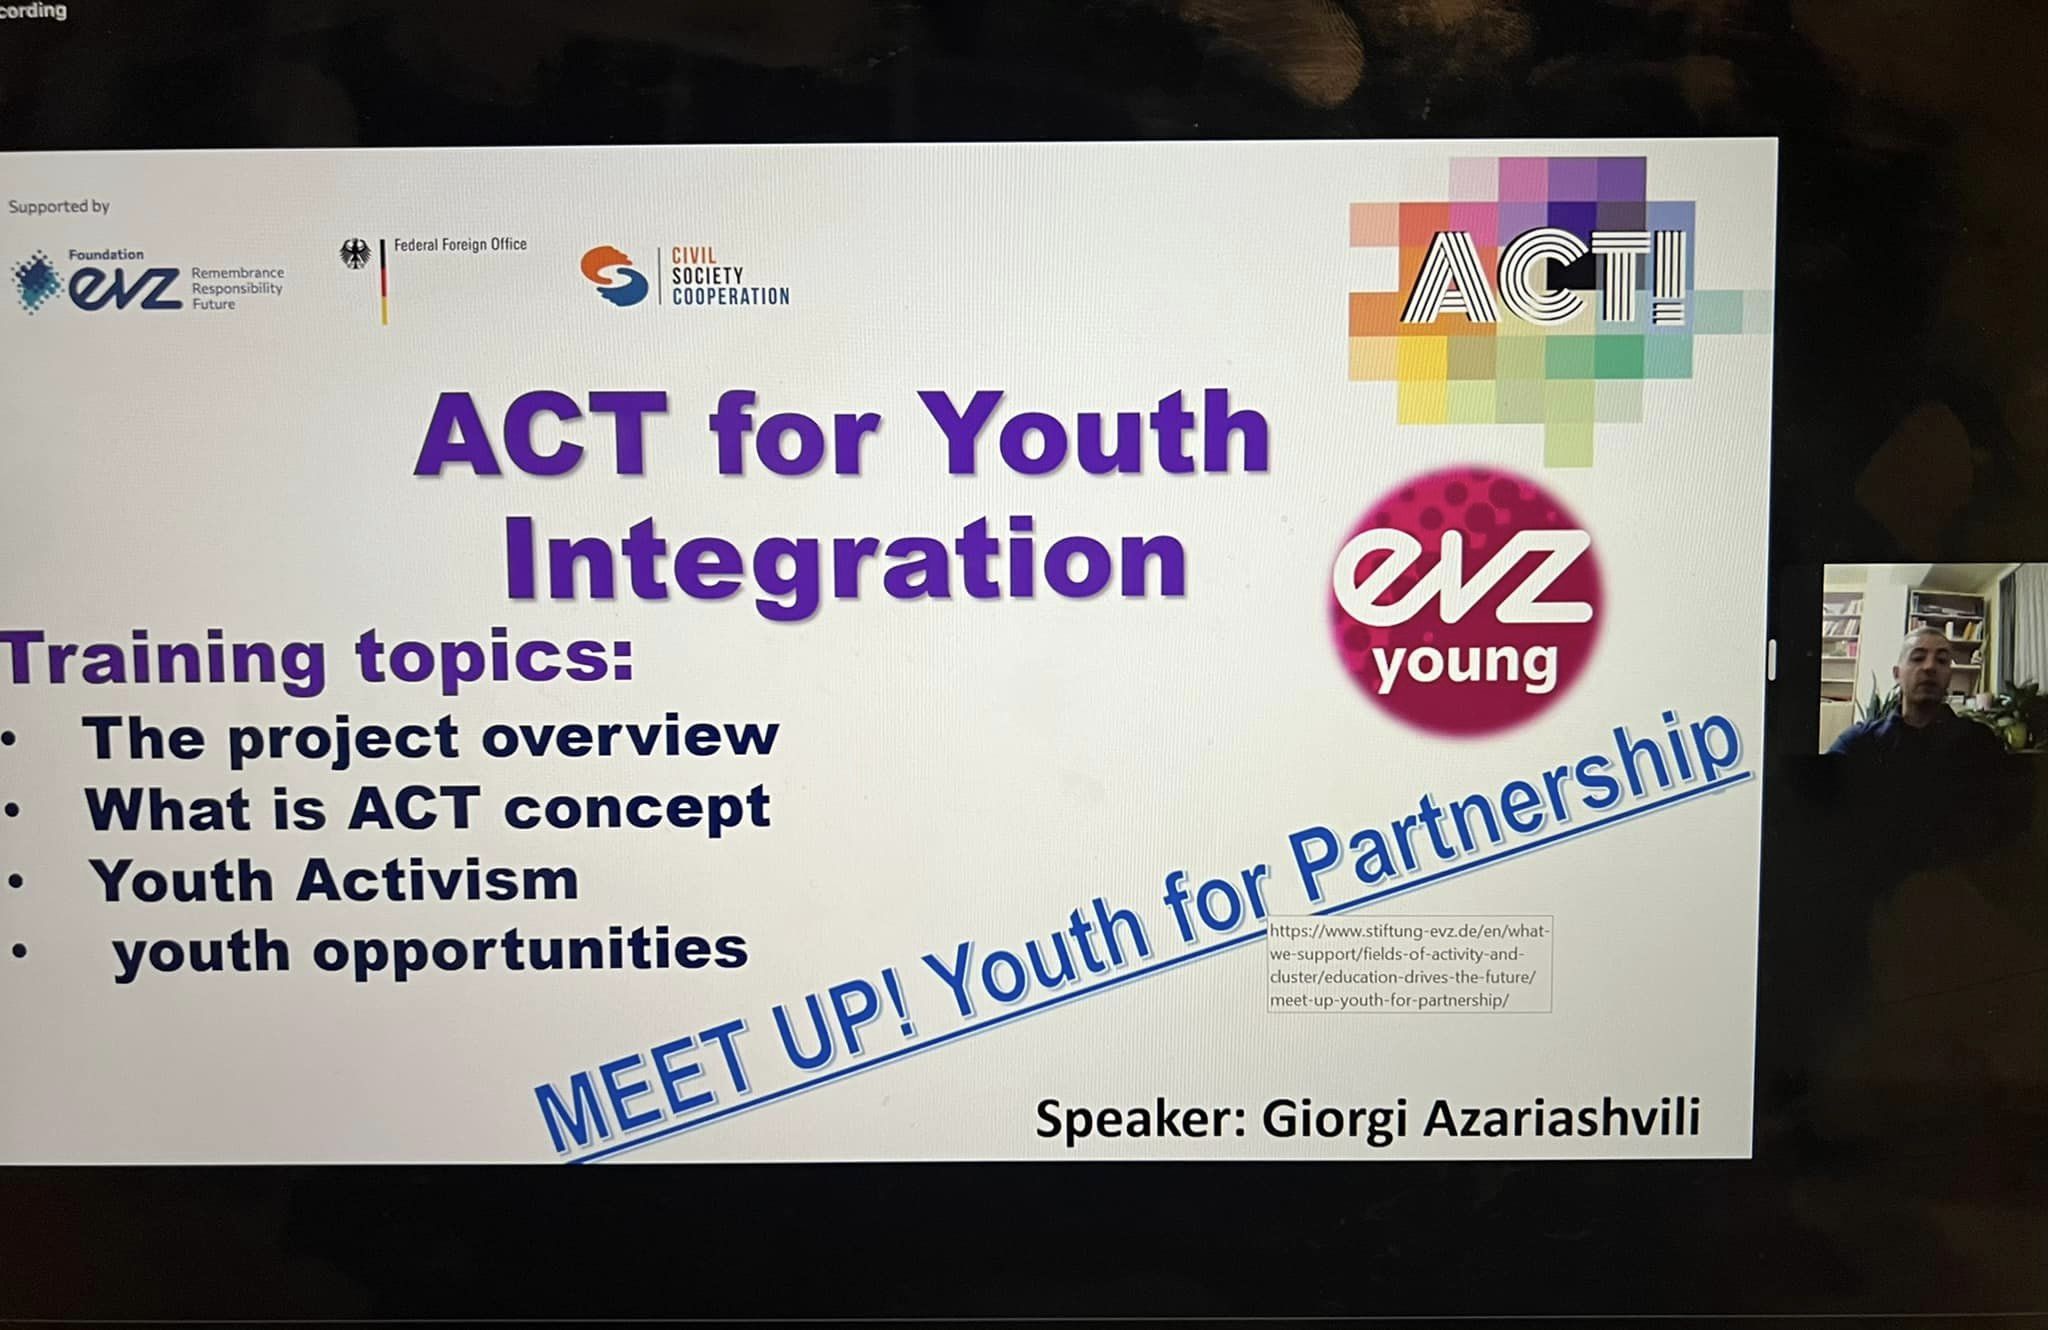 პროექტი იმოქმედე ახალგაზრდების ინტეგრაციისთვის (ACT for Youth Integration)